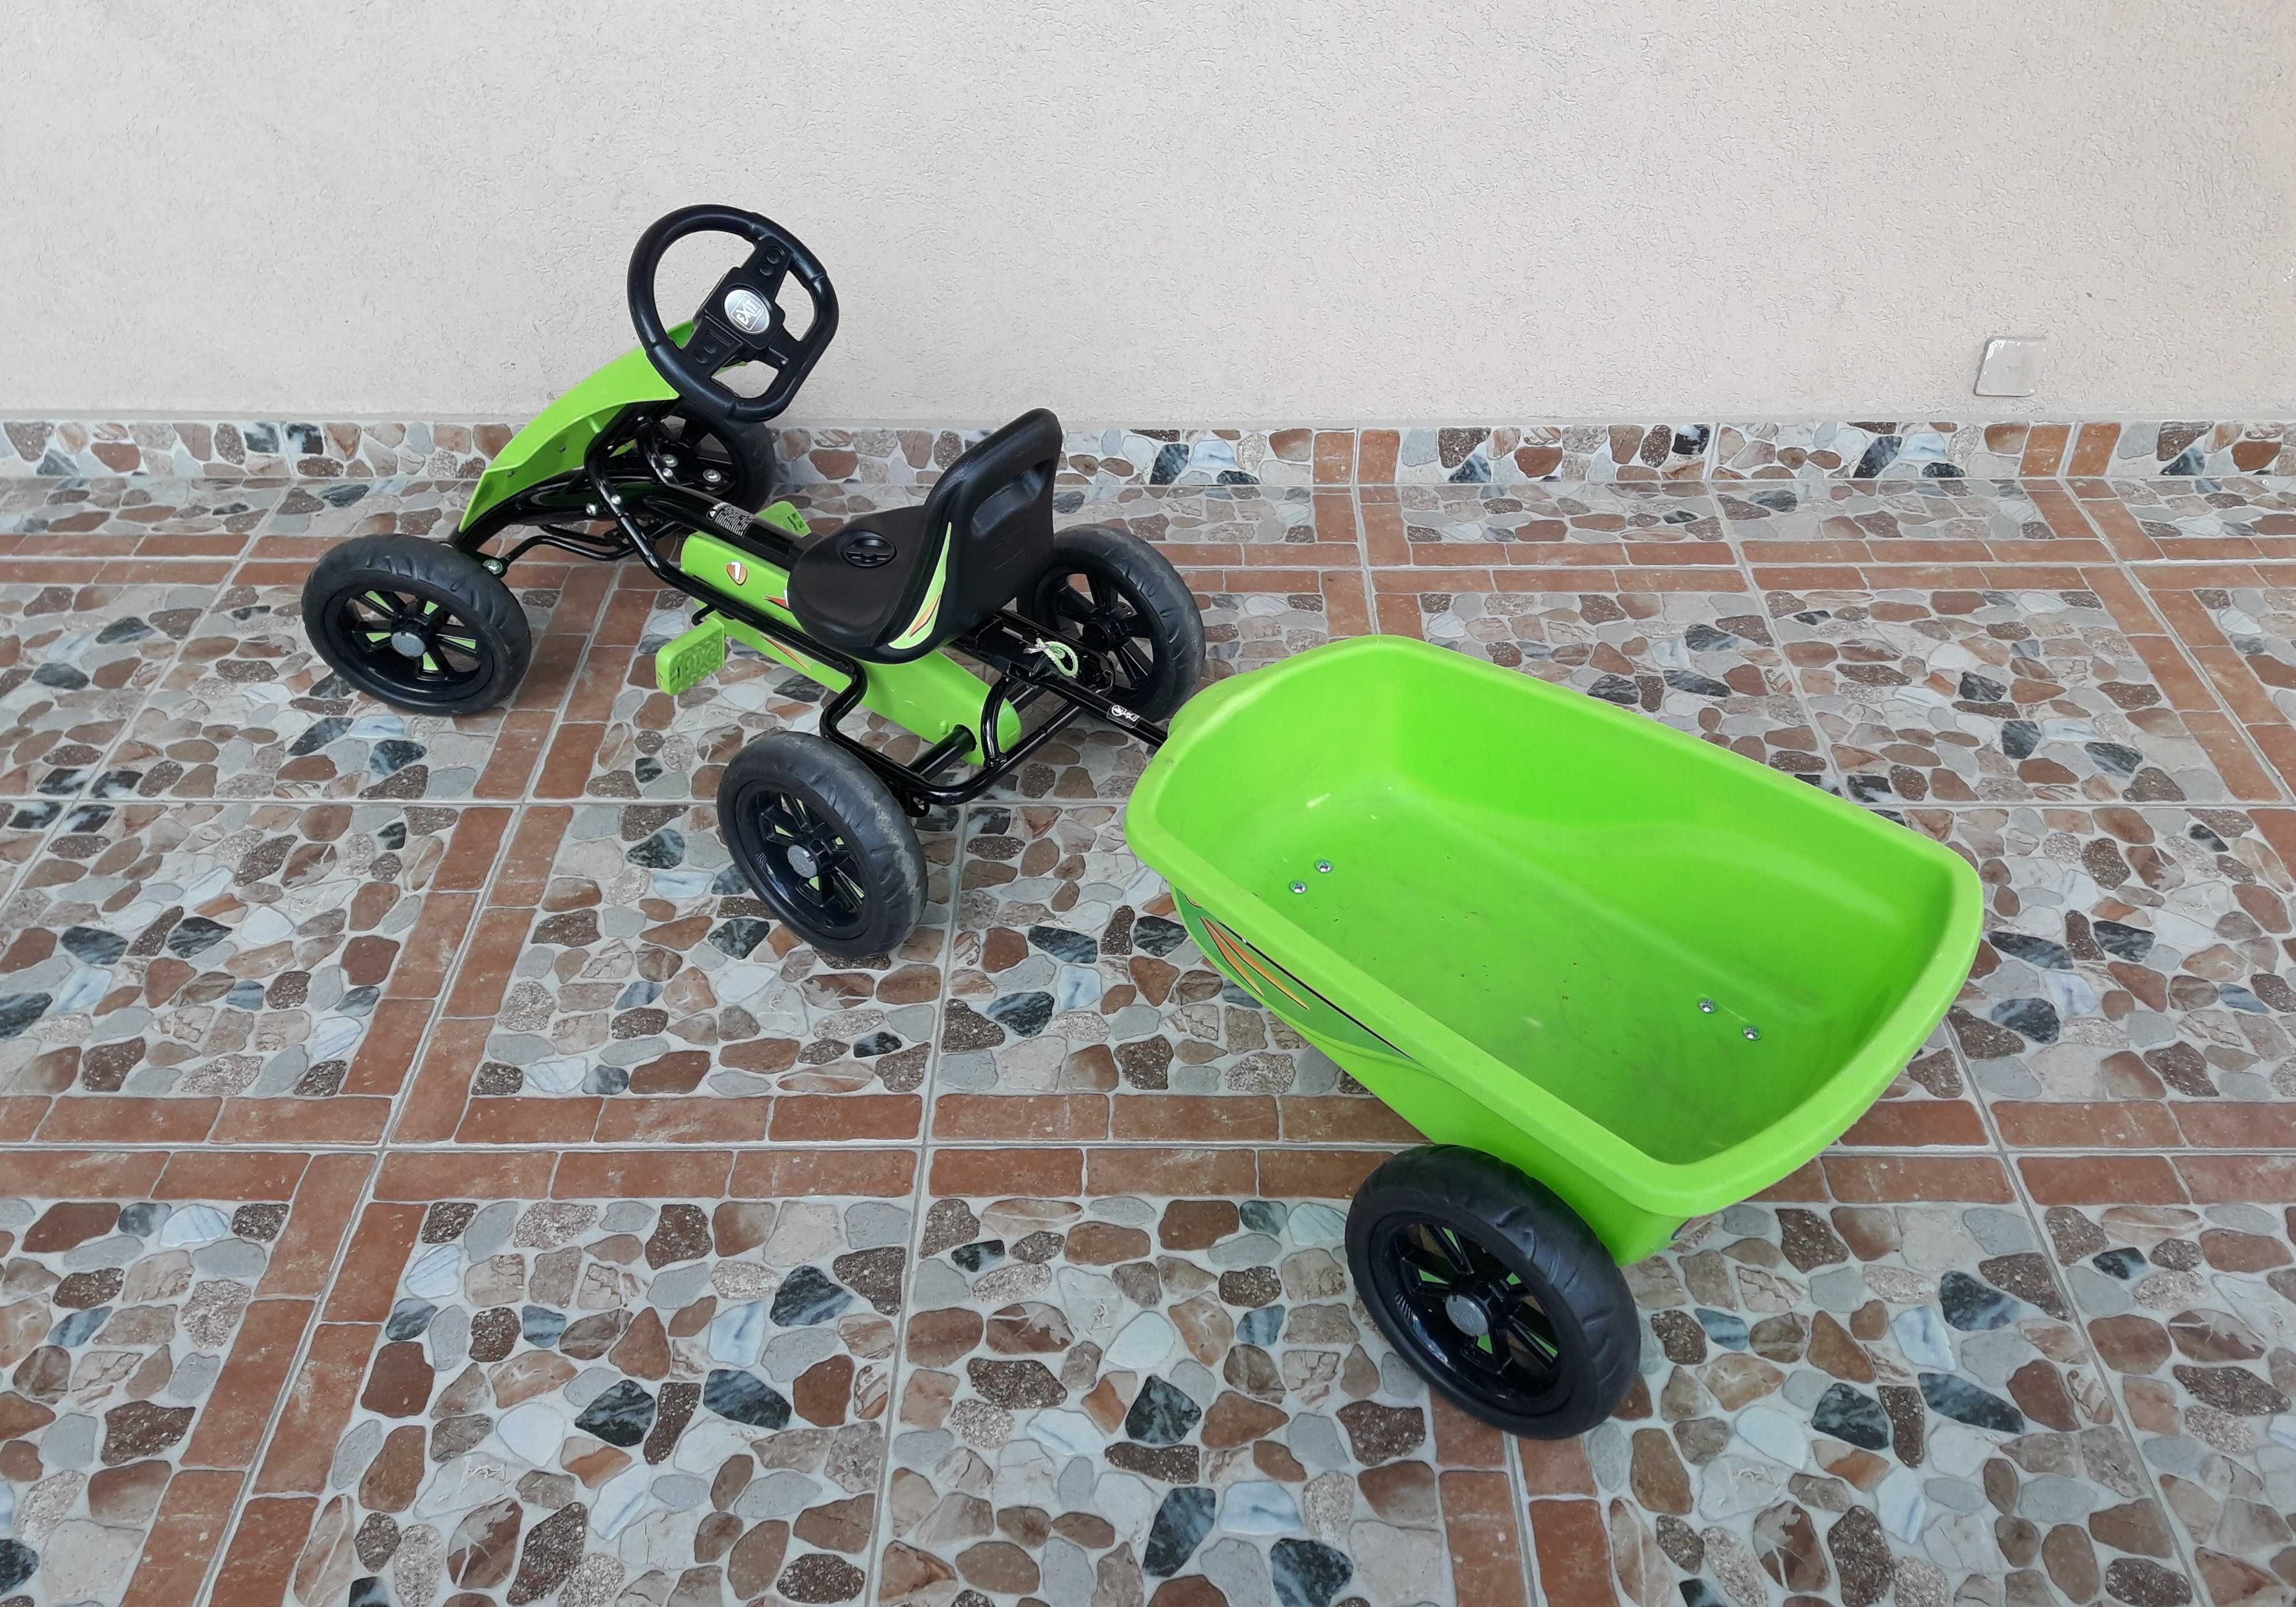 Cart (Kart) cu pedale pentru copii Exit Foxy, remorcă  – verde